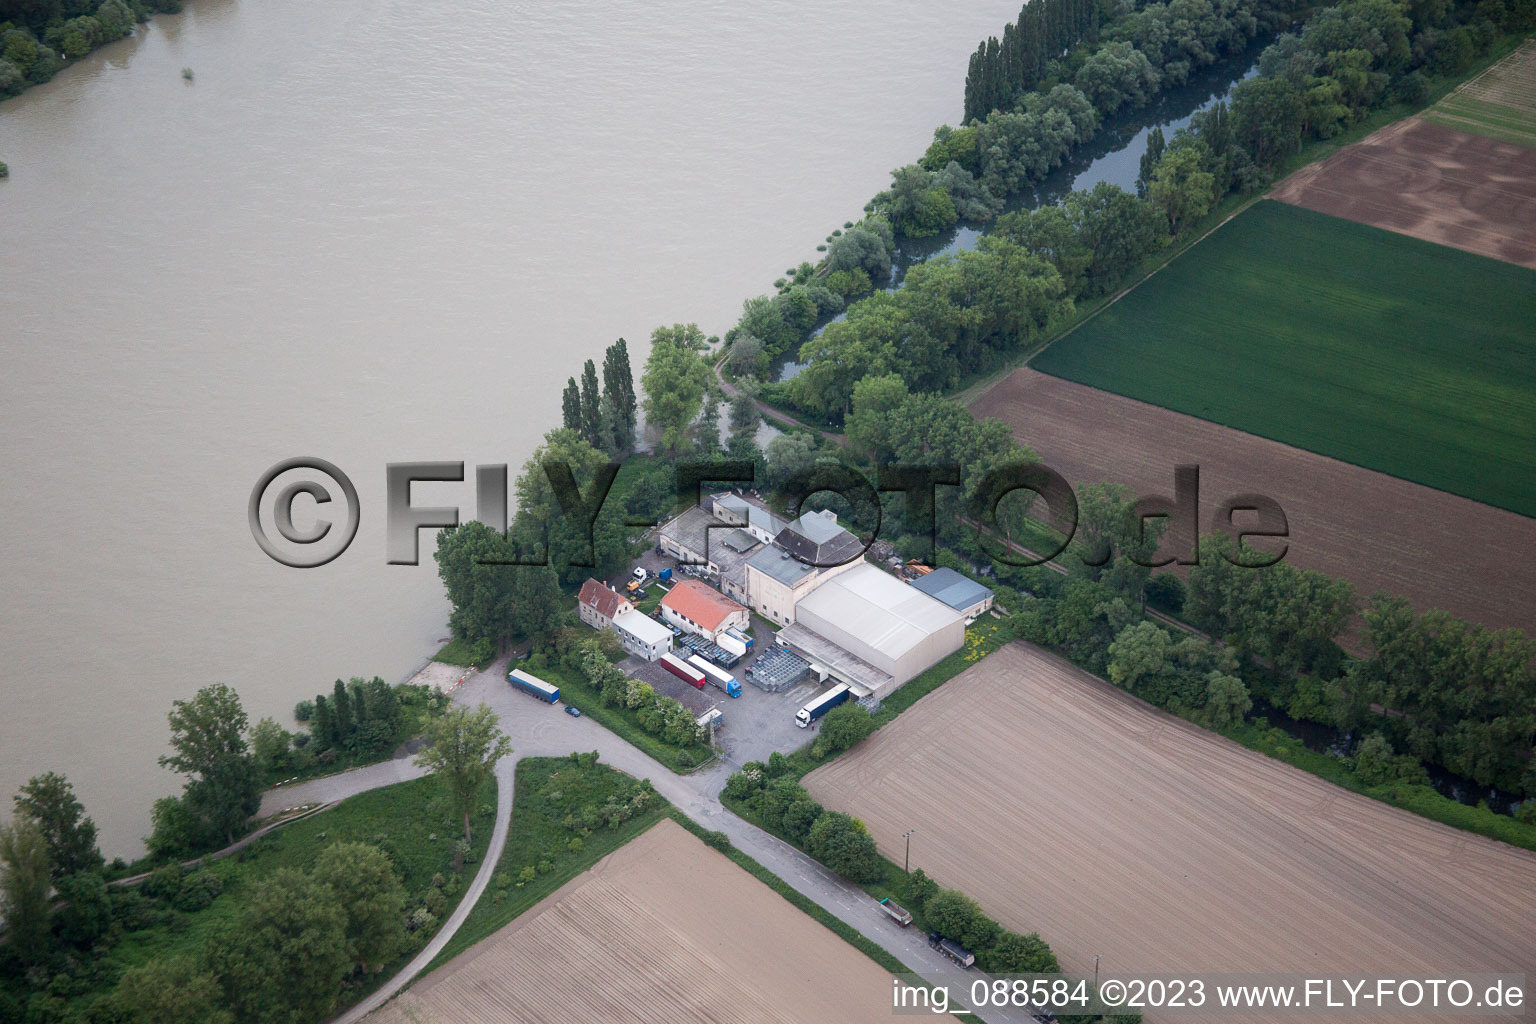 Luftbild von Spedition am Rhein in Worms im Bundesland Rheinland-Pfalz, Deutschland